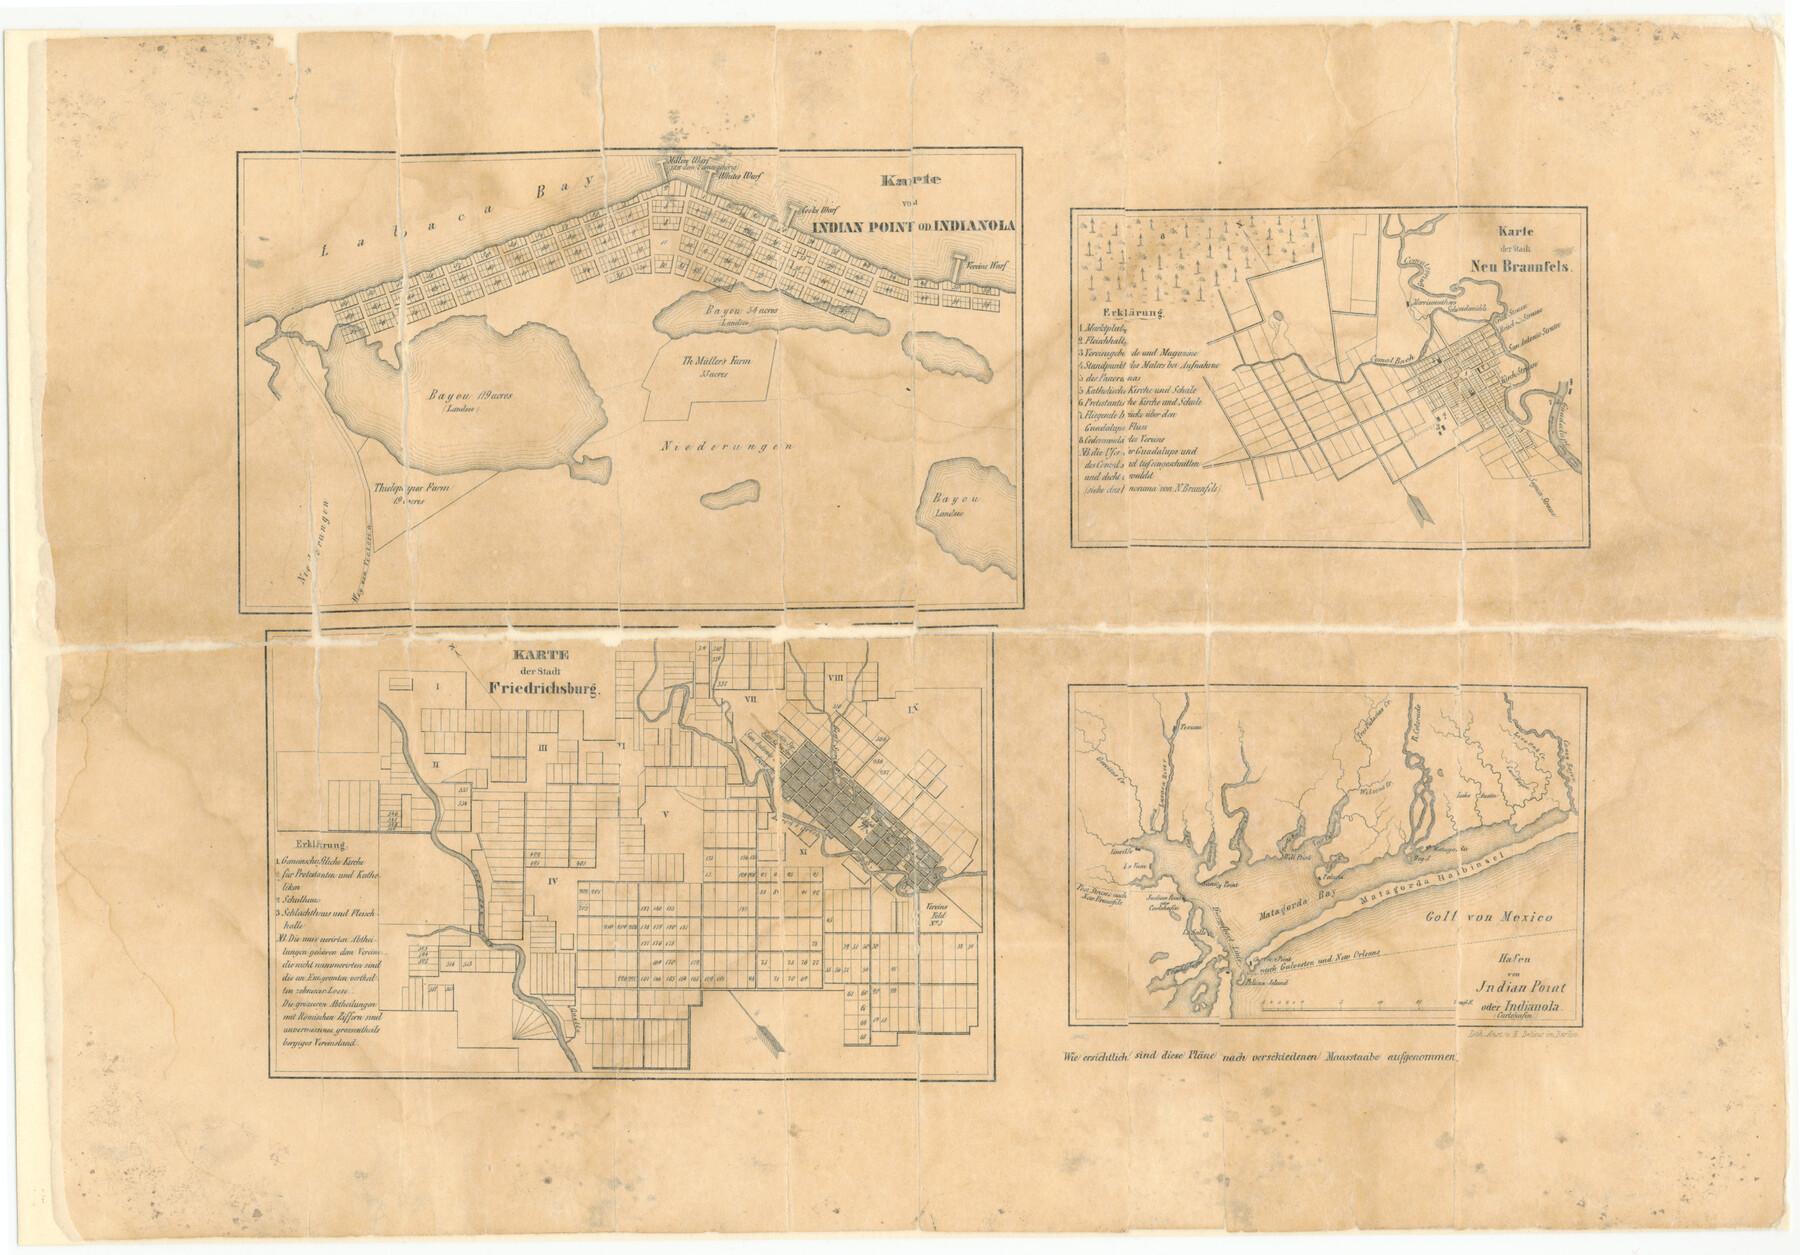 2182, Karte von Indian Point od Indianola / Karte der Stadt Neu Braunfels / Karte der Stadt Friedrichsburg / Hafen von Indian Point oder Indianola, General Map Collection